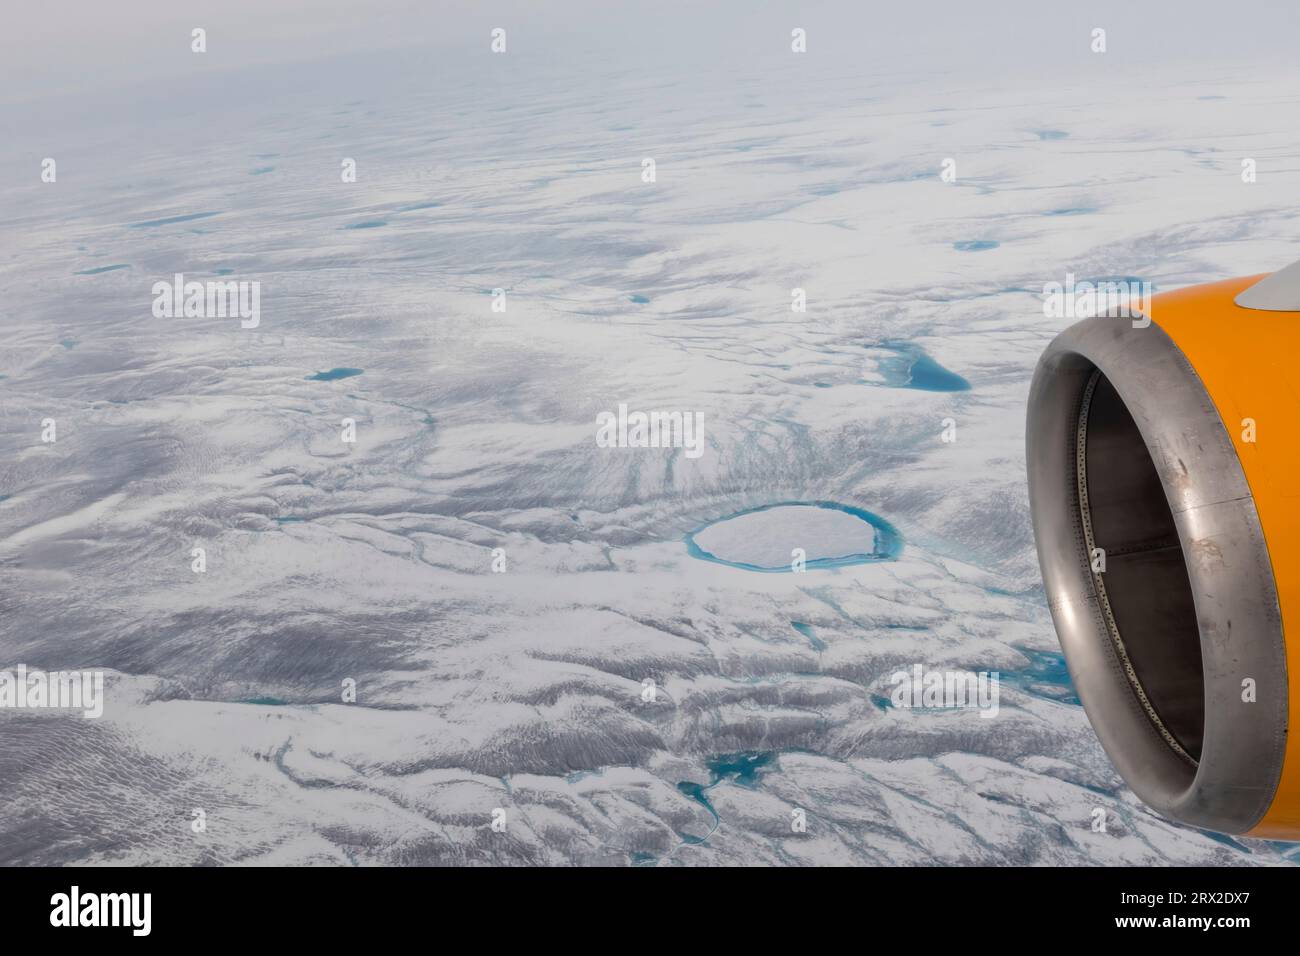 Vol commercial au-dessus de la calotte glaciaire du Groenland à destination de Kangerlussuaq, municipalité de Qeqqata, ouest du Groenland, régions polaires Banque D'Images